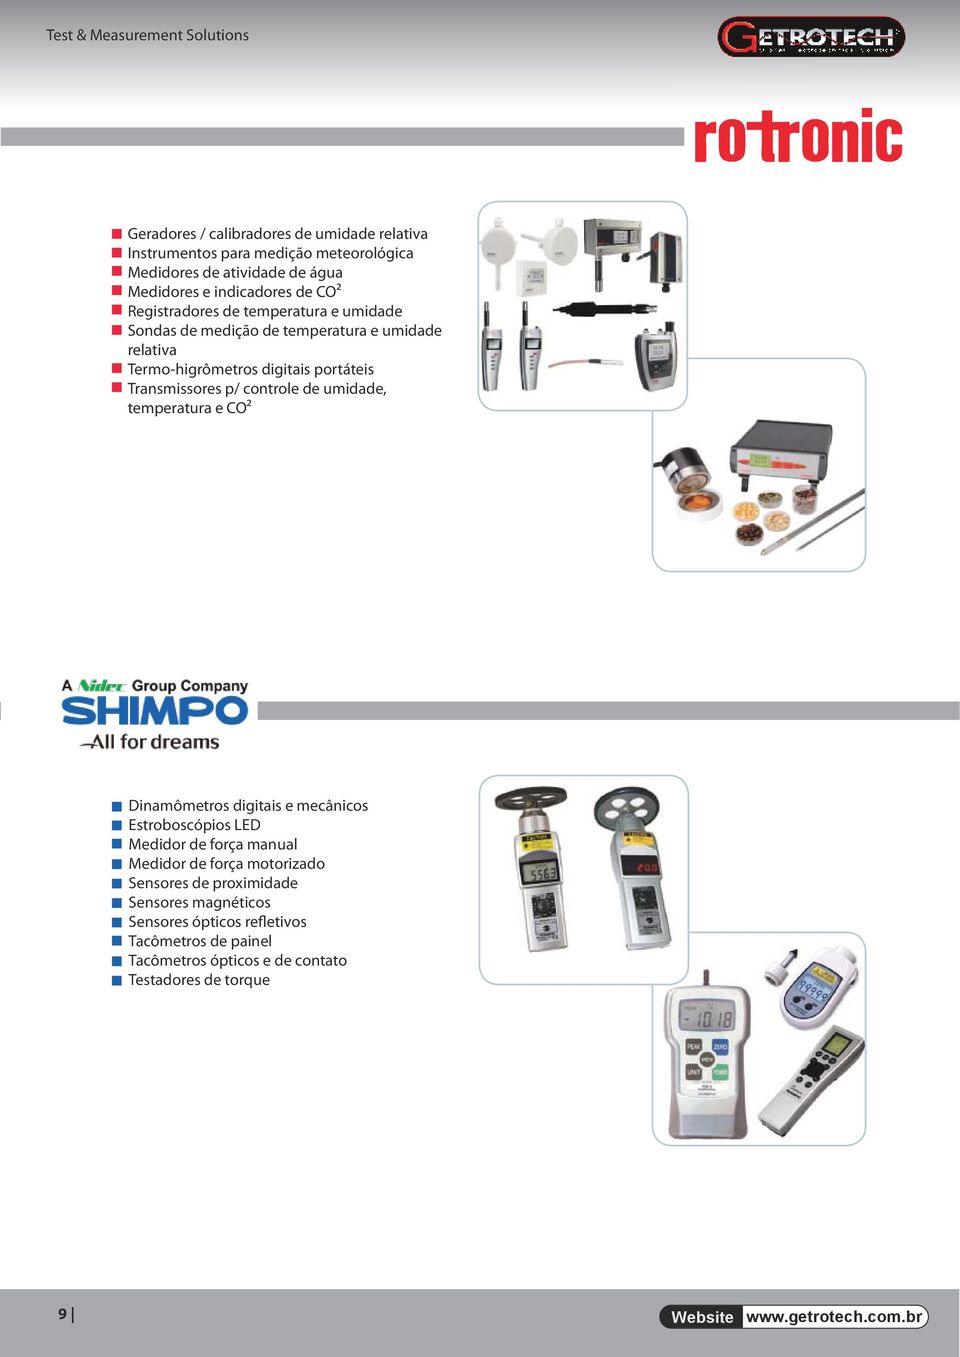 controle de umidade, temperatura e CO² Dinamômetros digitais e mecânicos Estroboscópios LED Medidor de força manual Medidor de força motorizado Sensores